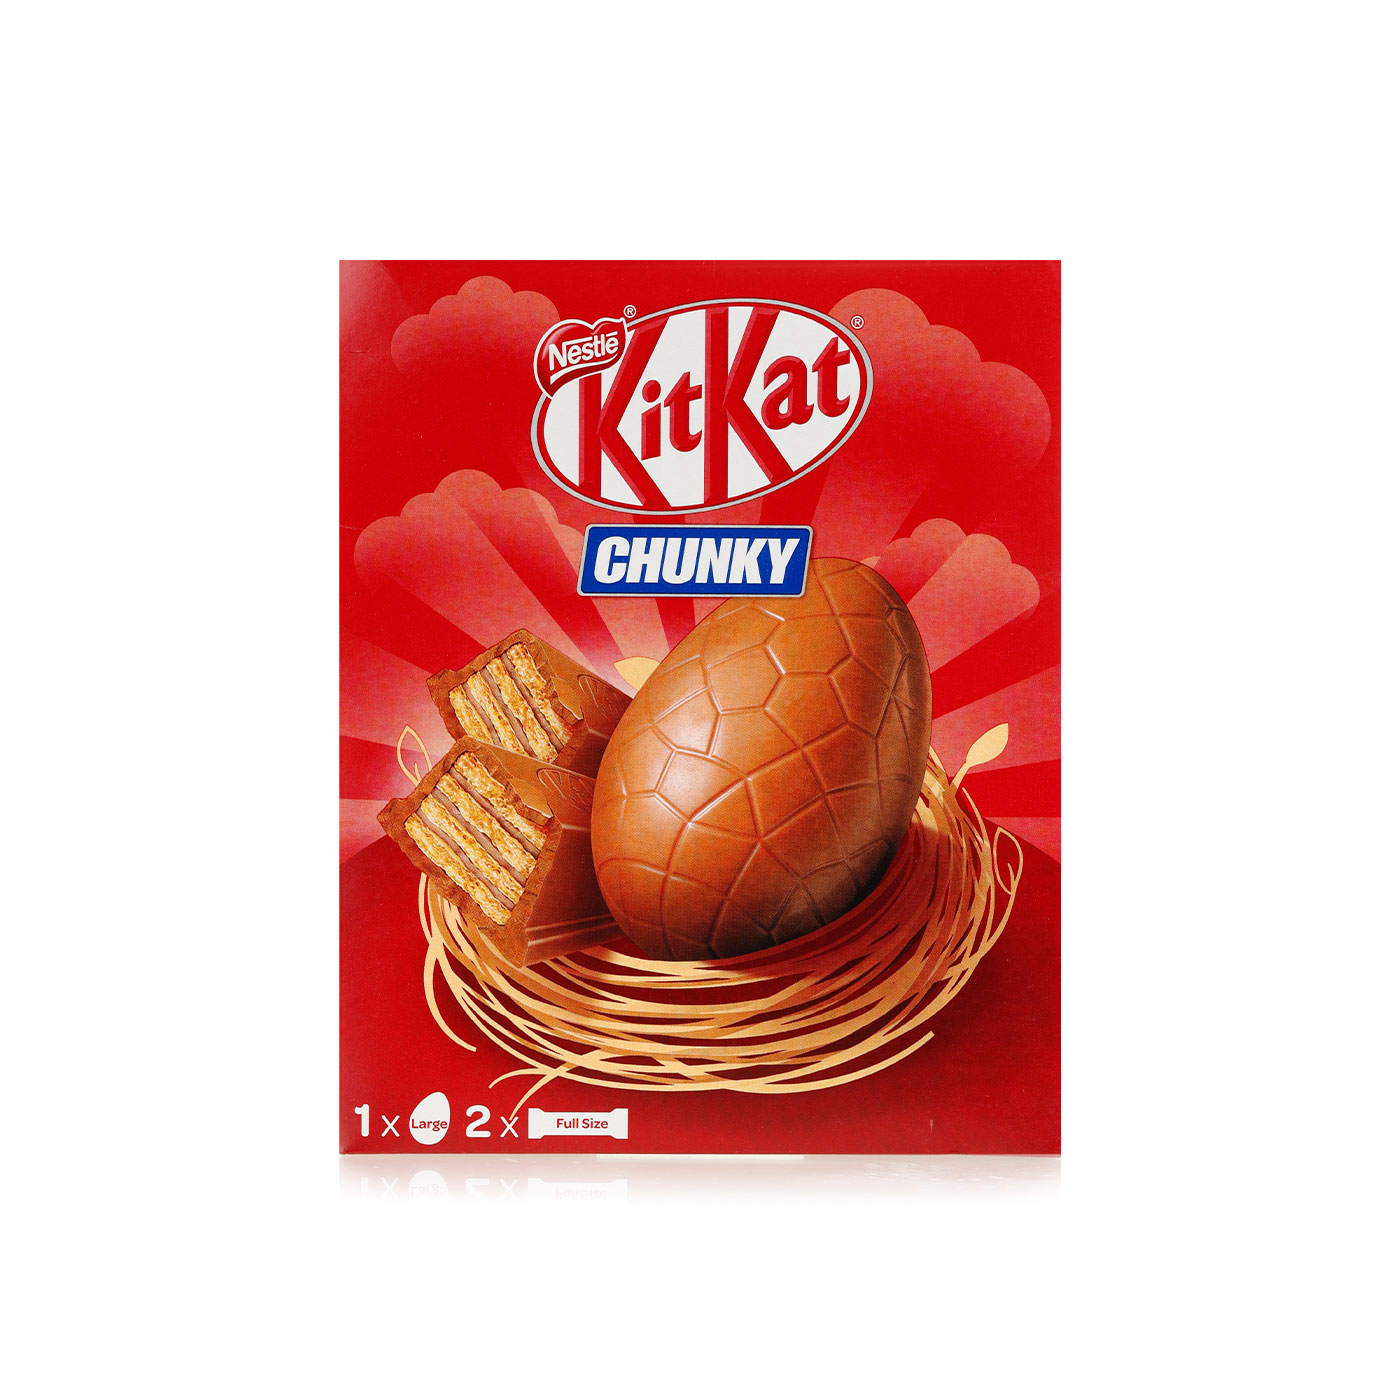 Nestlé Kitkat Chunky Large Egg (260g)